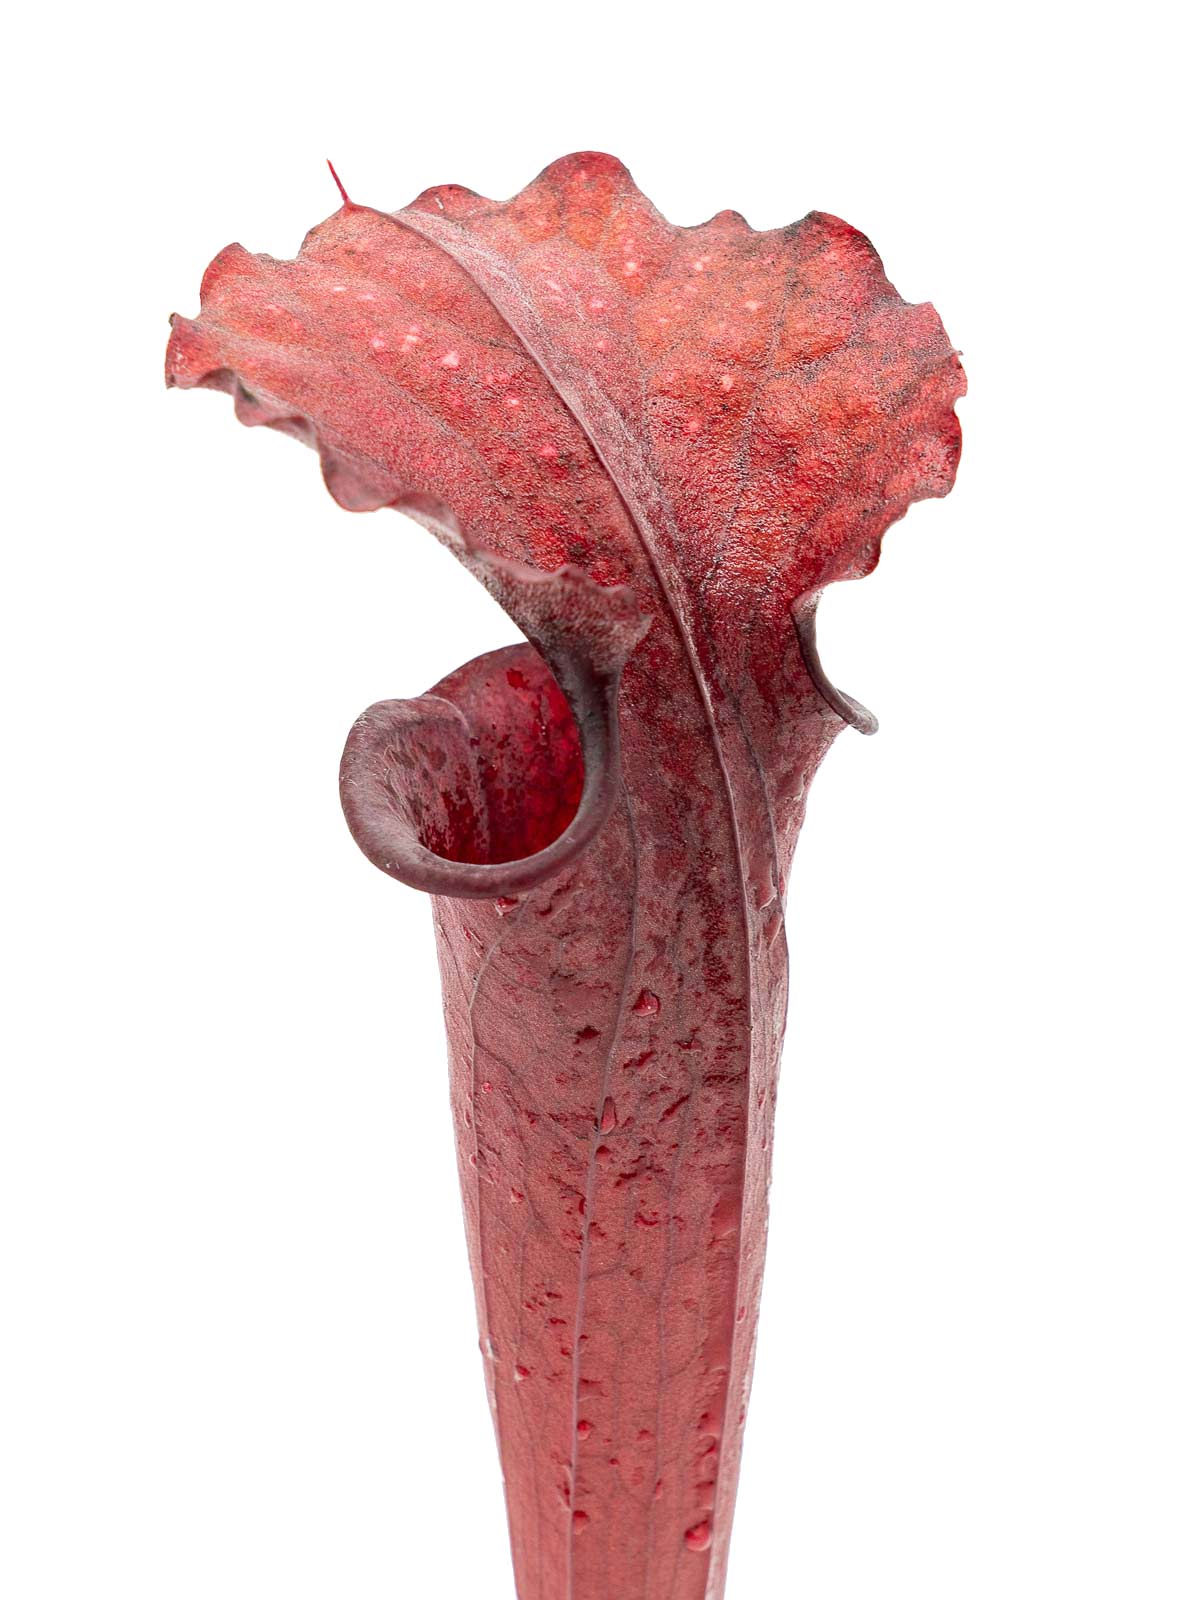 Sarracenia moorei - red form, GJ Clone 3